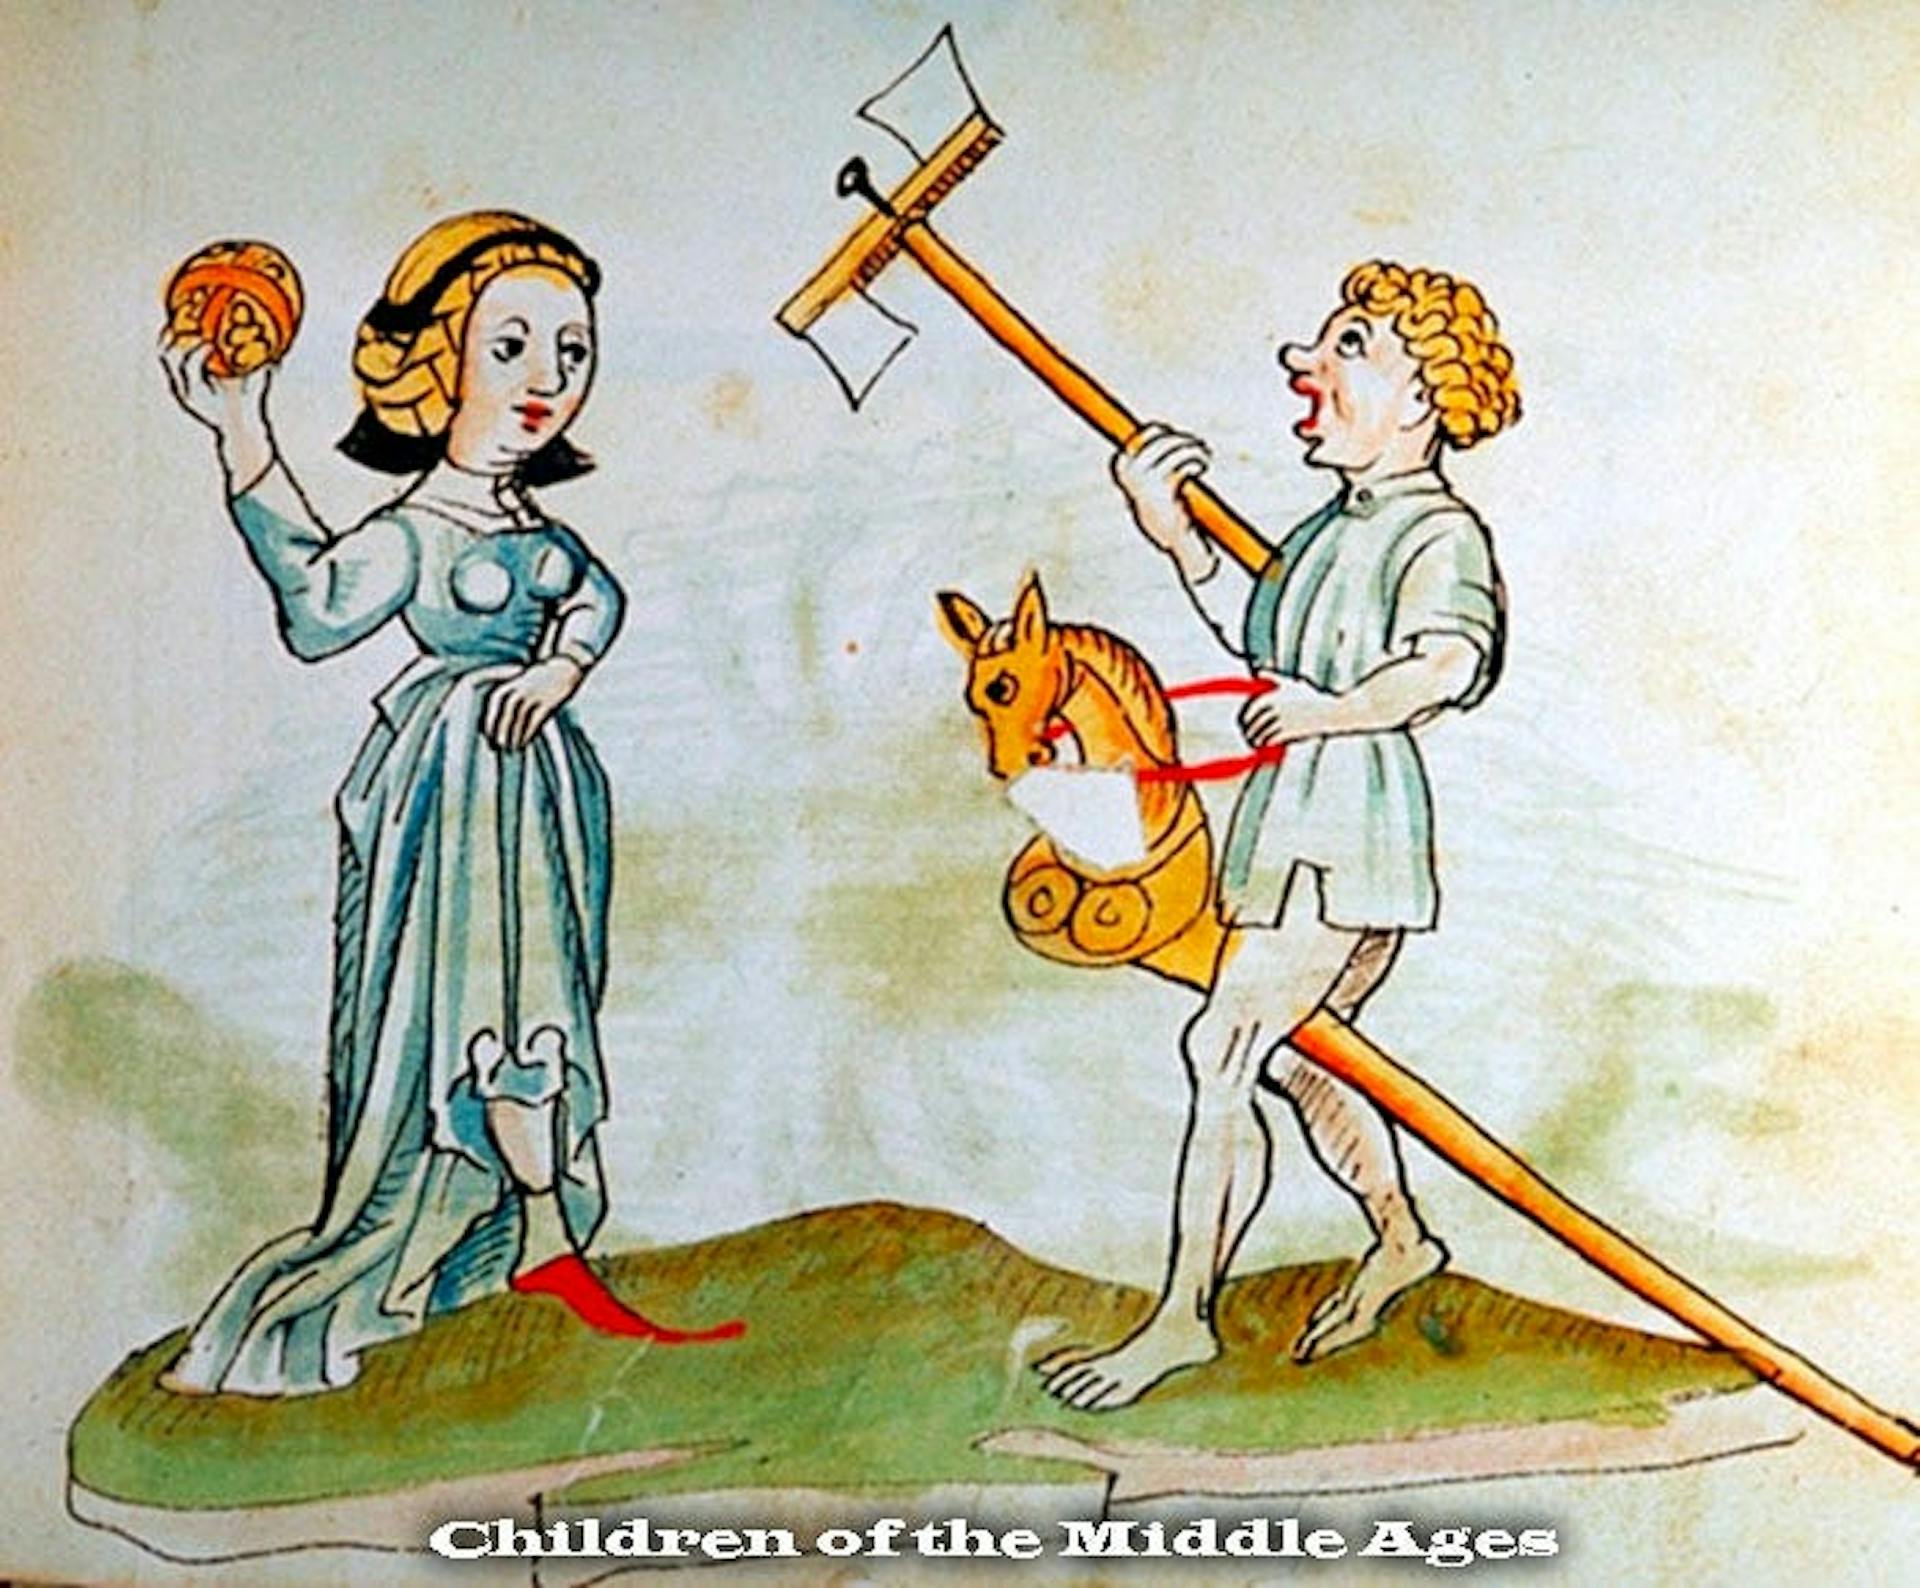 Jouer au Moyen Âge. Source : Compagnon d'une femme médiévale.